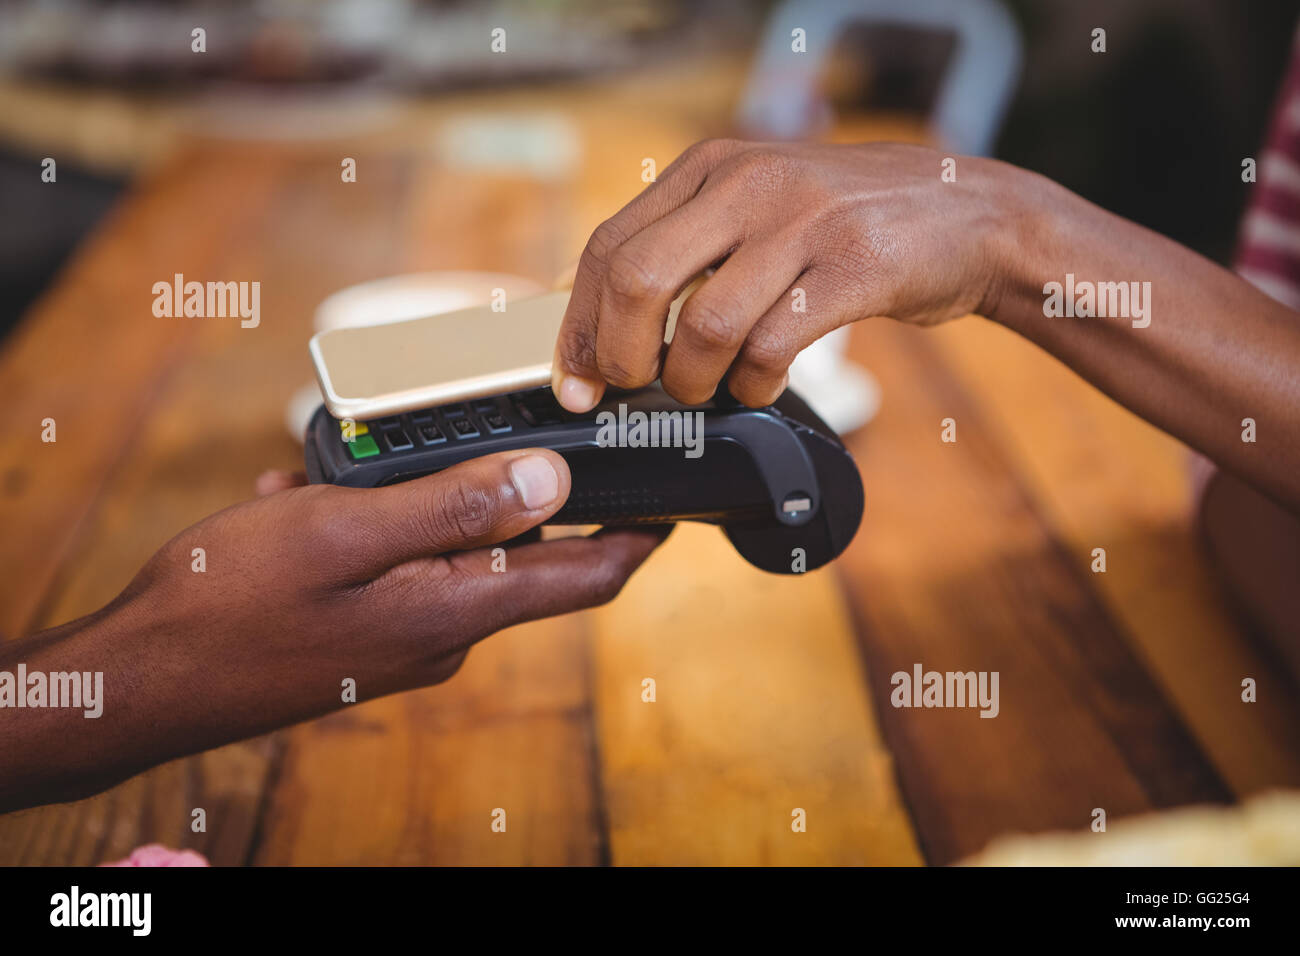 Femme de payer bill par smartphone à l'aide de la technologie NFC Banque D'Images